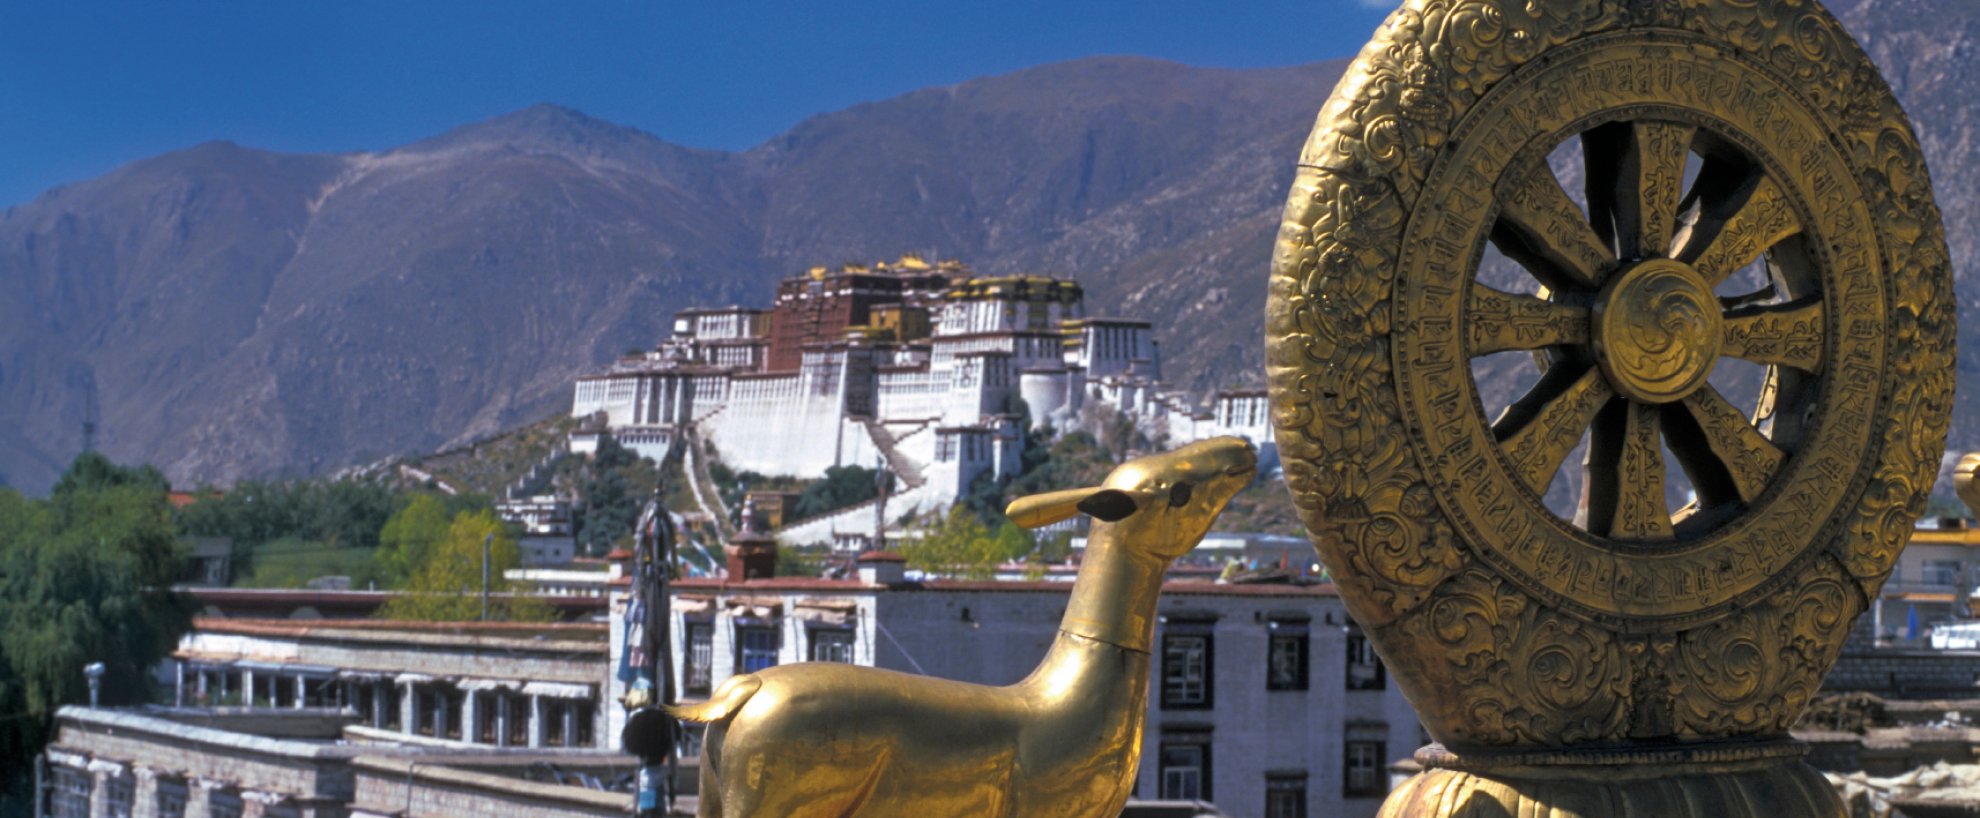 Tibet Potala Palast